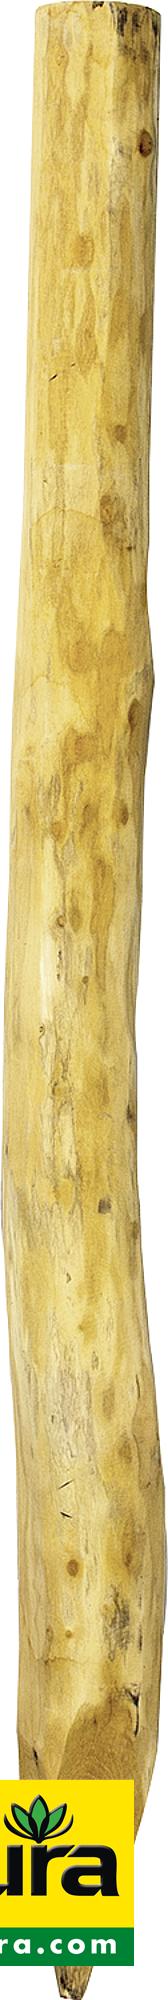 Patura Robinienpfahl, rund, geschliffen, 2250 mm, d=16-18 cm, gefast, gehobelt, 219110